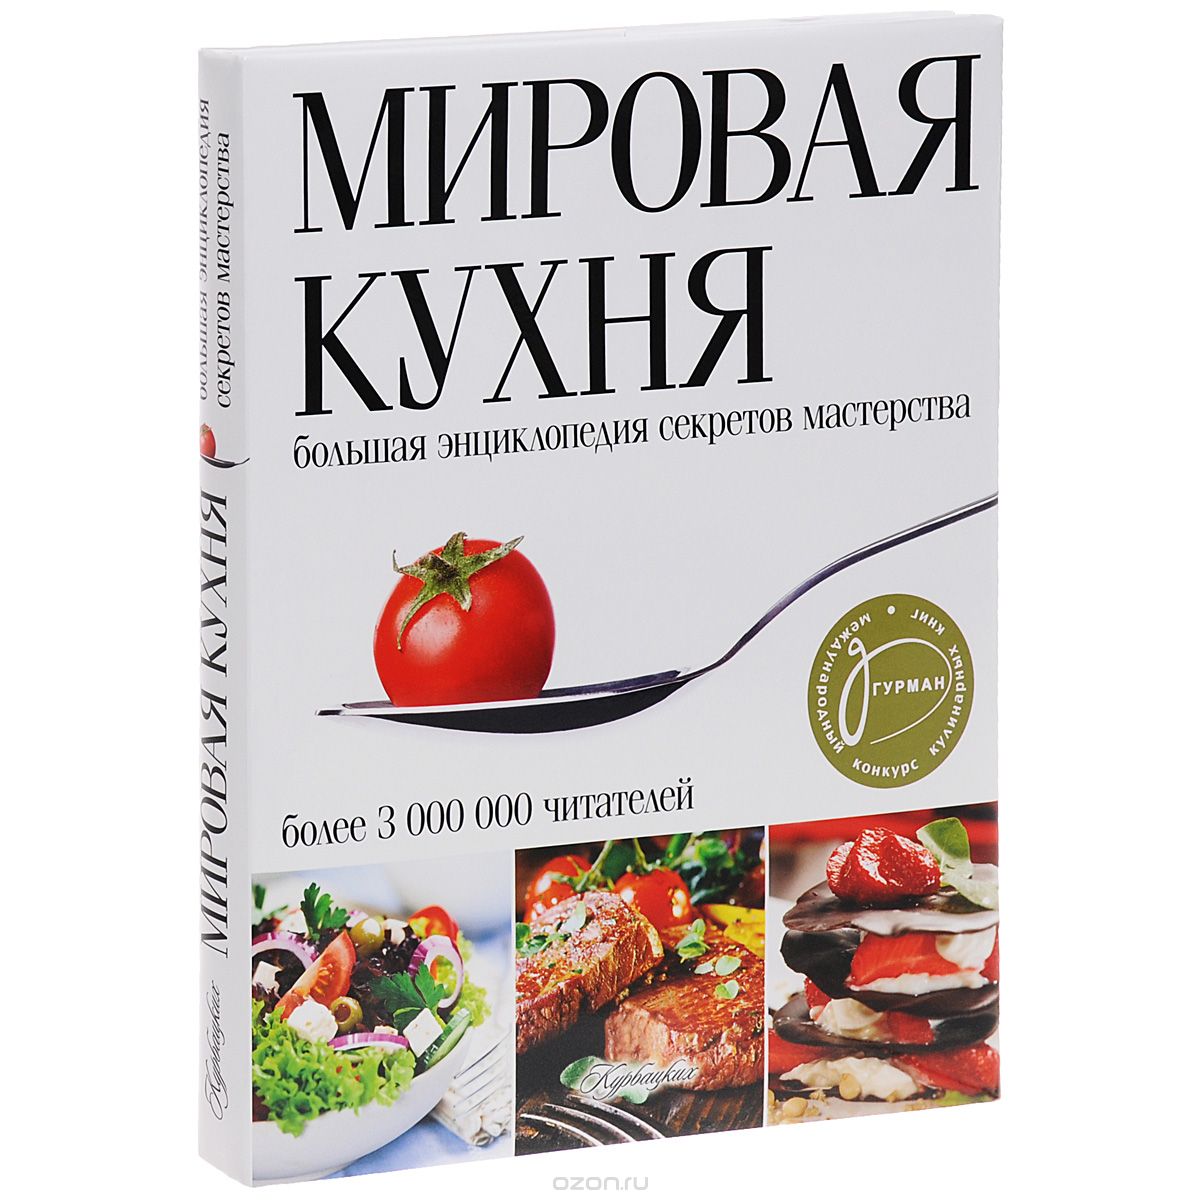 Скачать книгу "Мировая кухня. Большая энциклопедия секретов и мастерства"